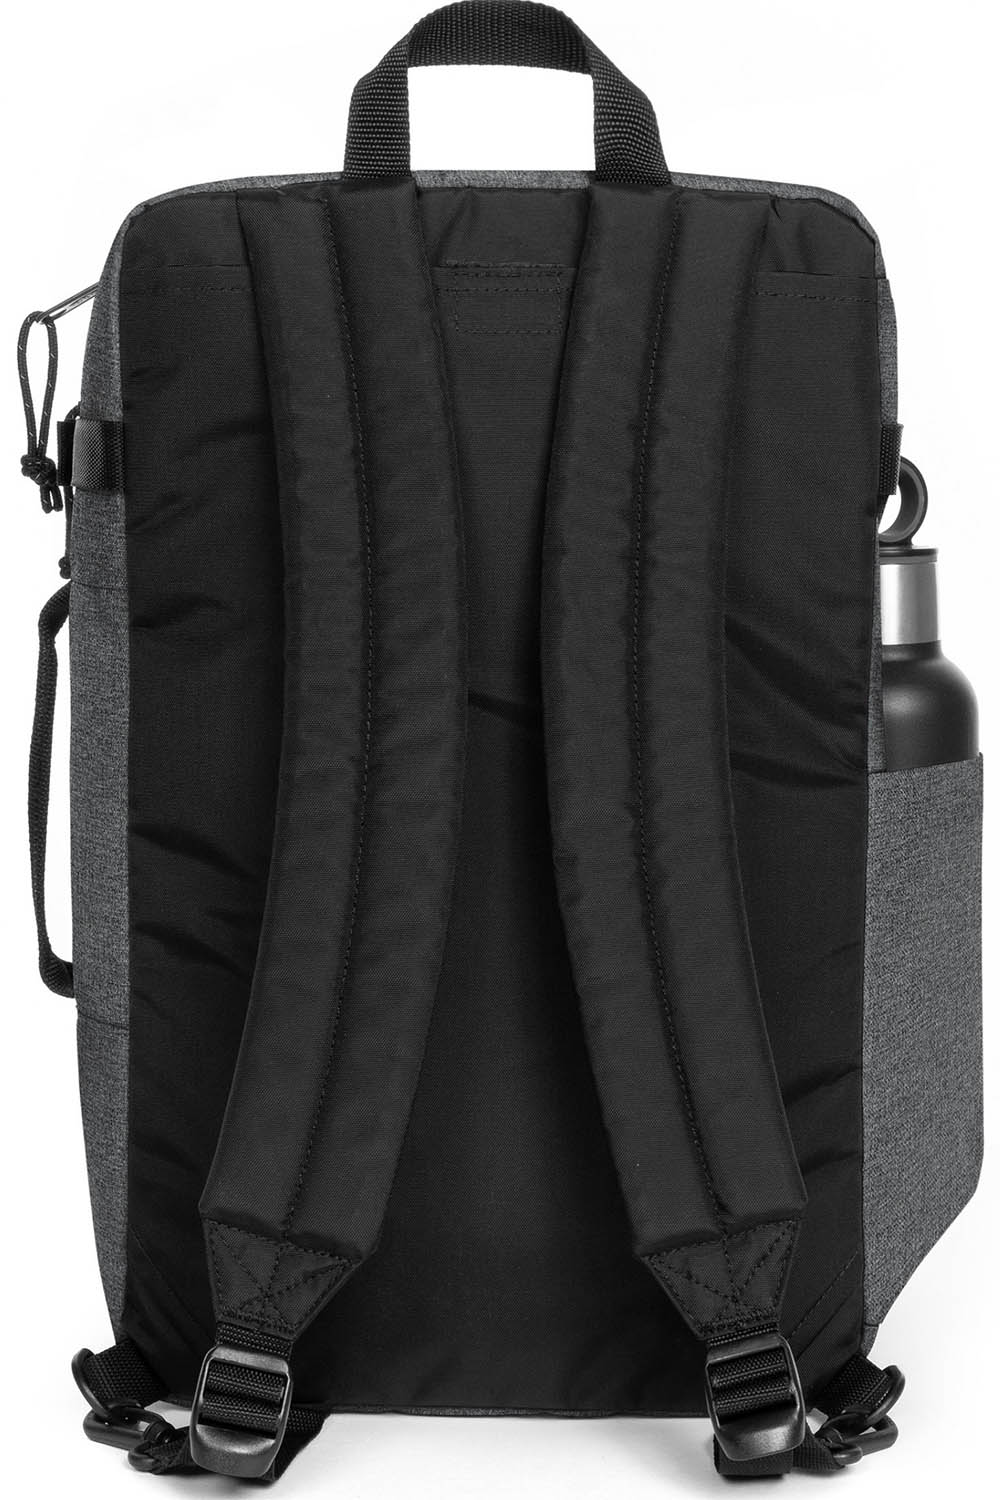 Eastpak Transit'R Pack Backpack - Black Denim